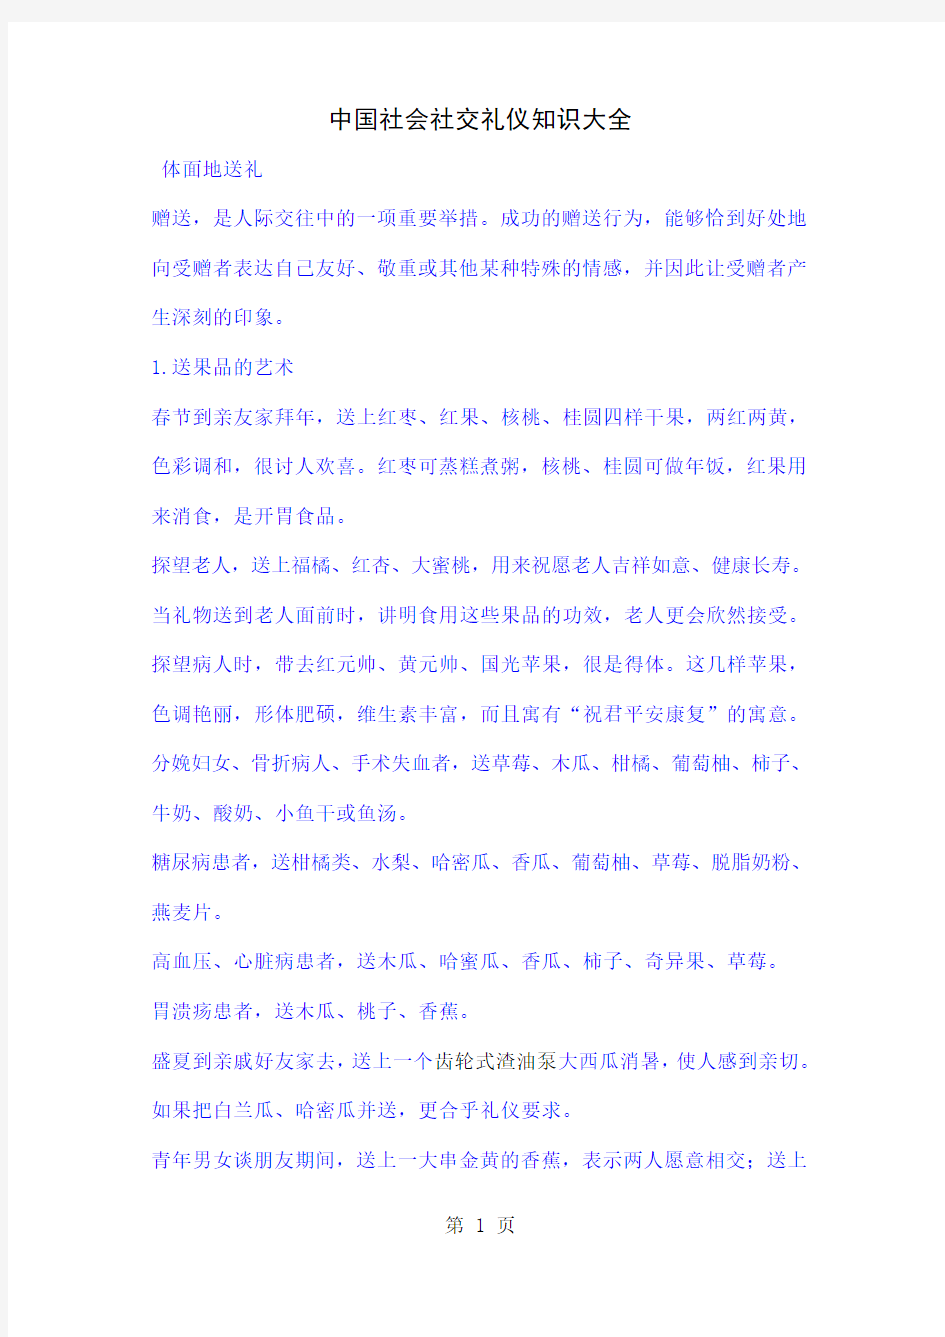 中国社会社交礼仪知识大全共7页文档